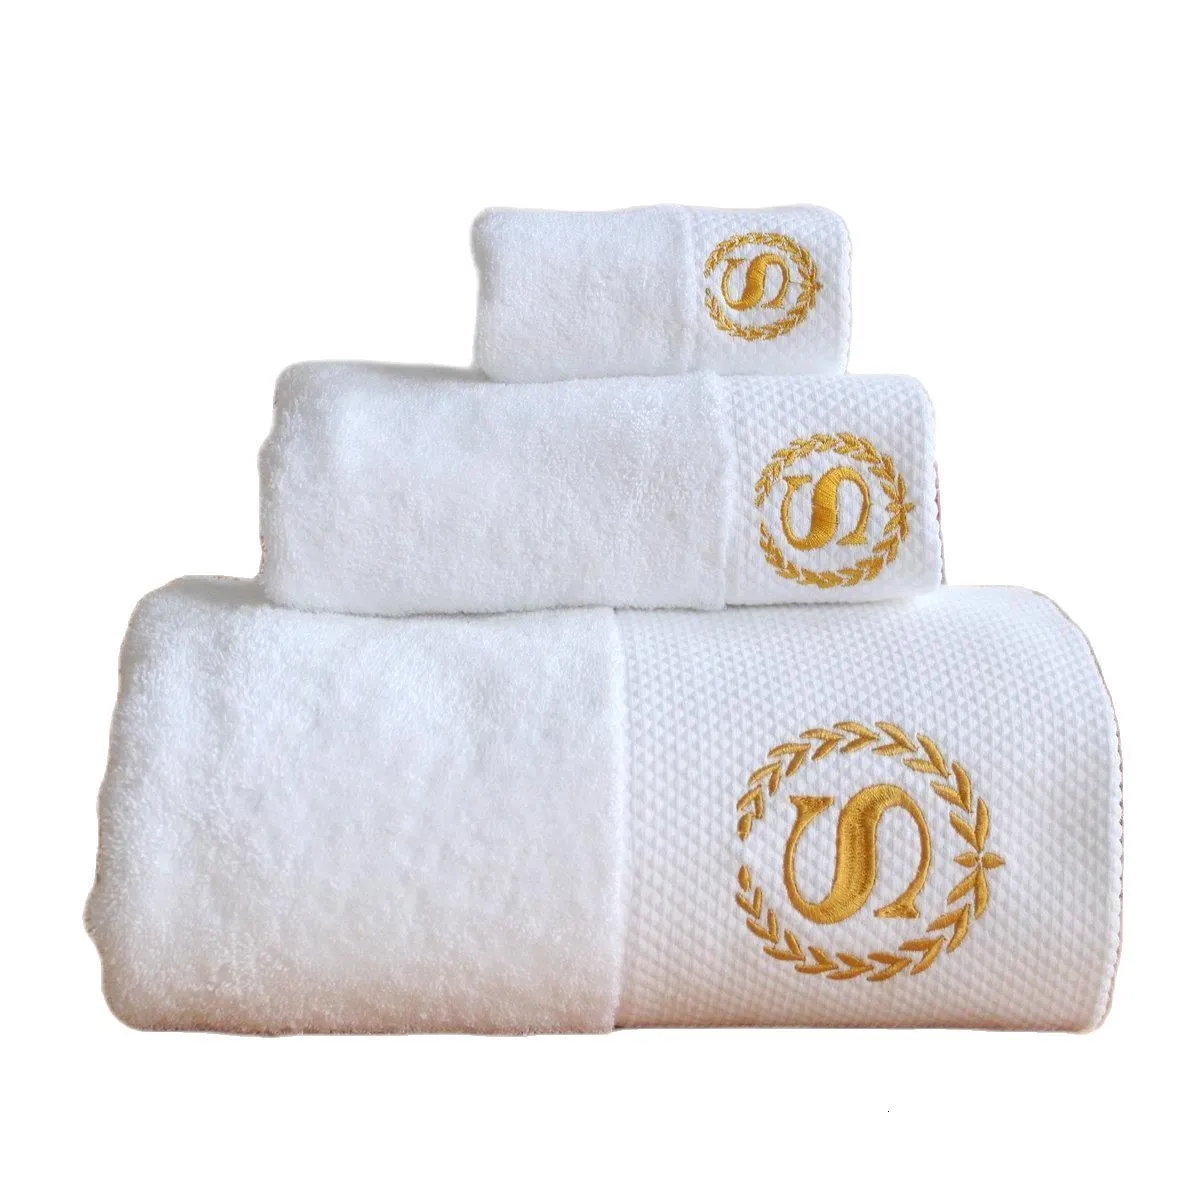 Полотенце для ванны ahsnme 80x160cm белые хлопковые бани полотенца El Spa Club Sauna Beauty Salon бесплатно обычай его название 230308